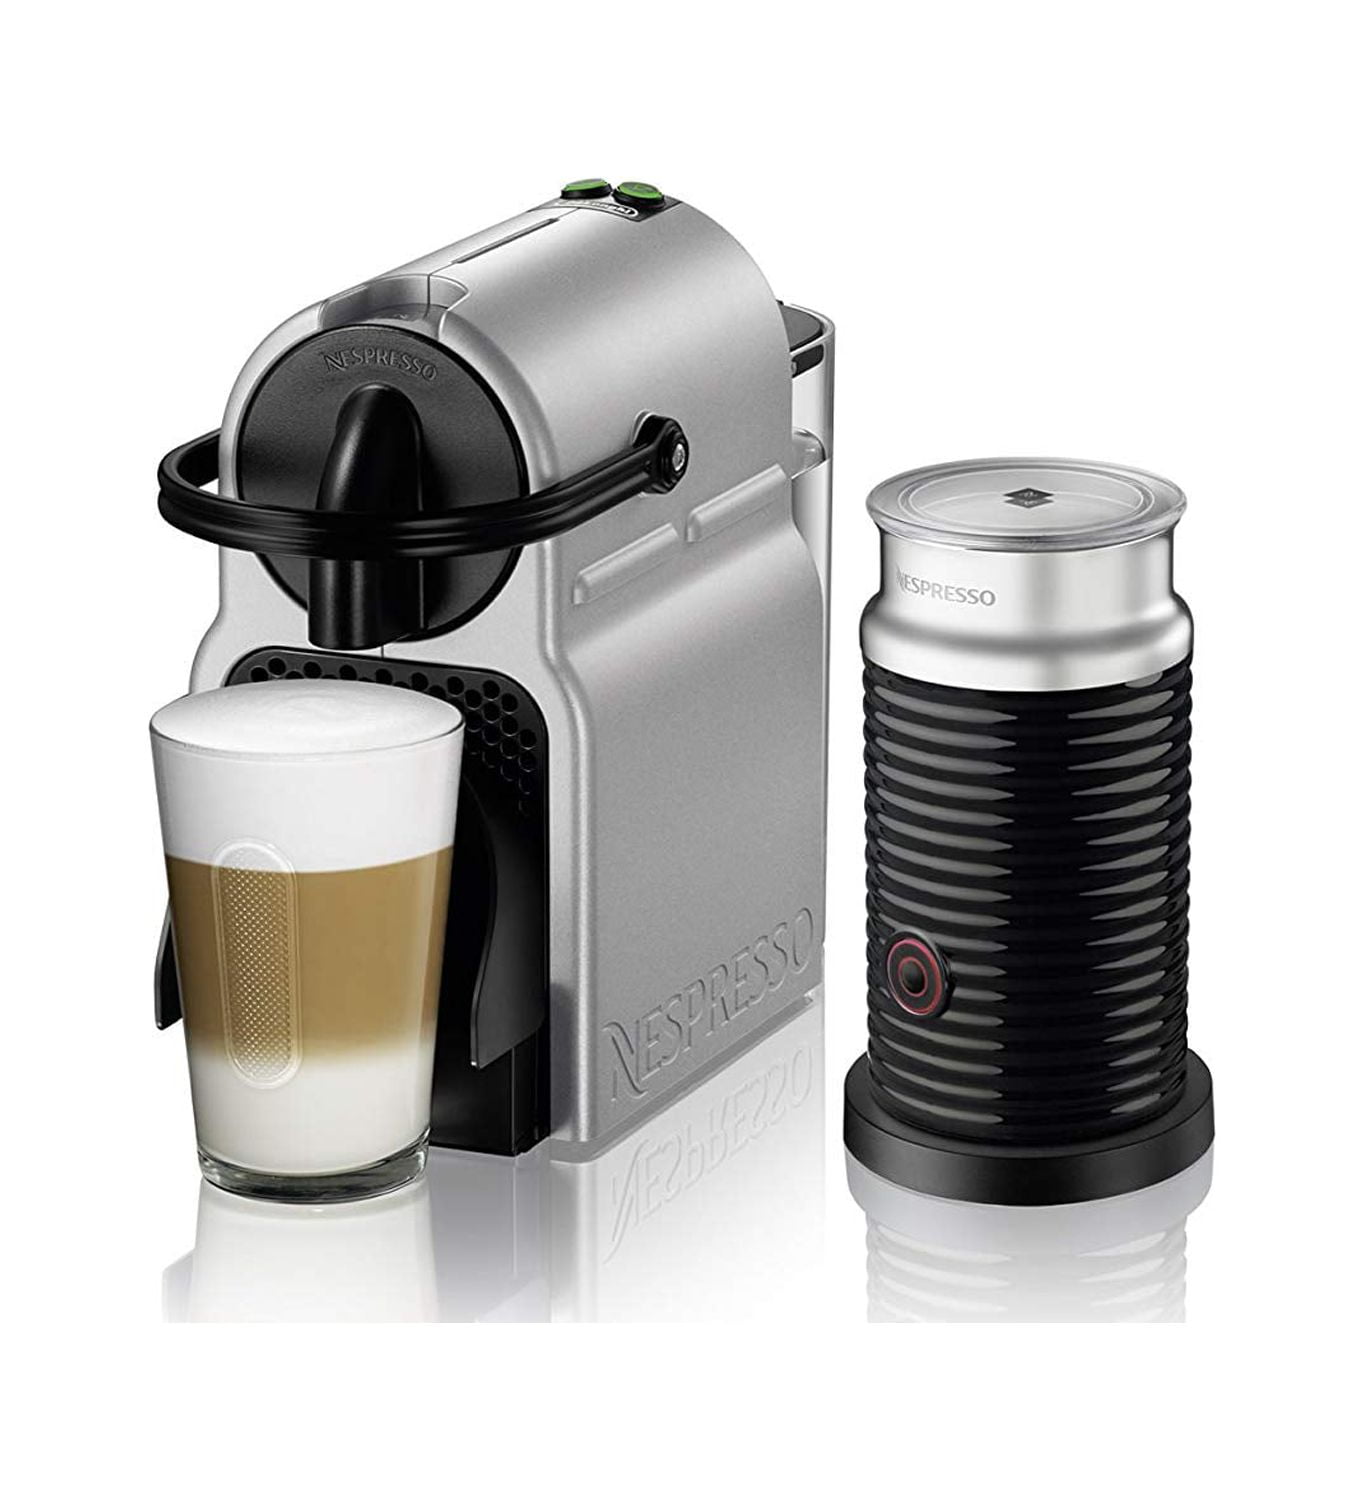  Nespresso Inissia Espresso Machine by De'Longhi,24 oz, Black:  Home & Kitchen